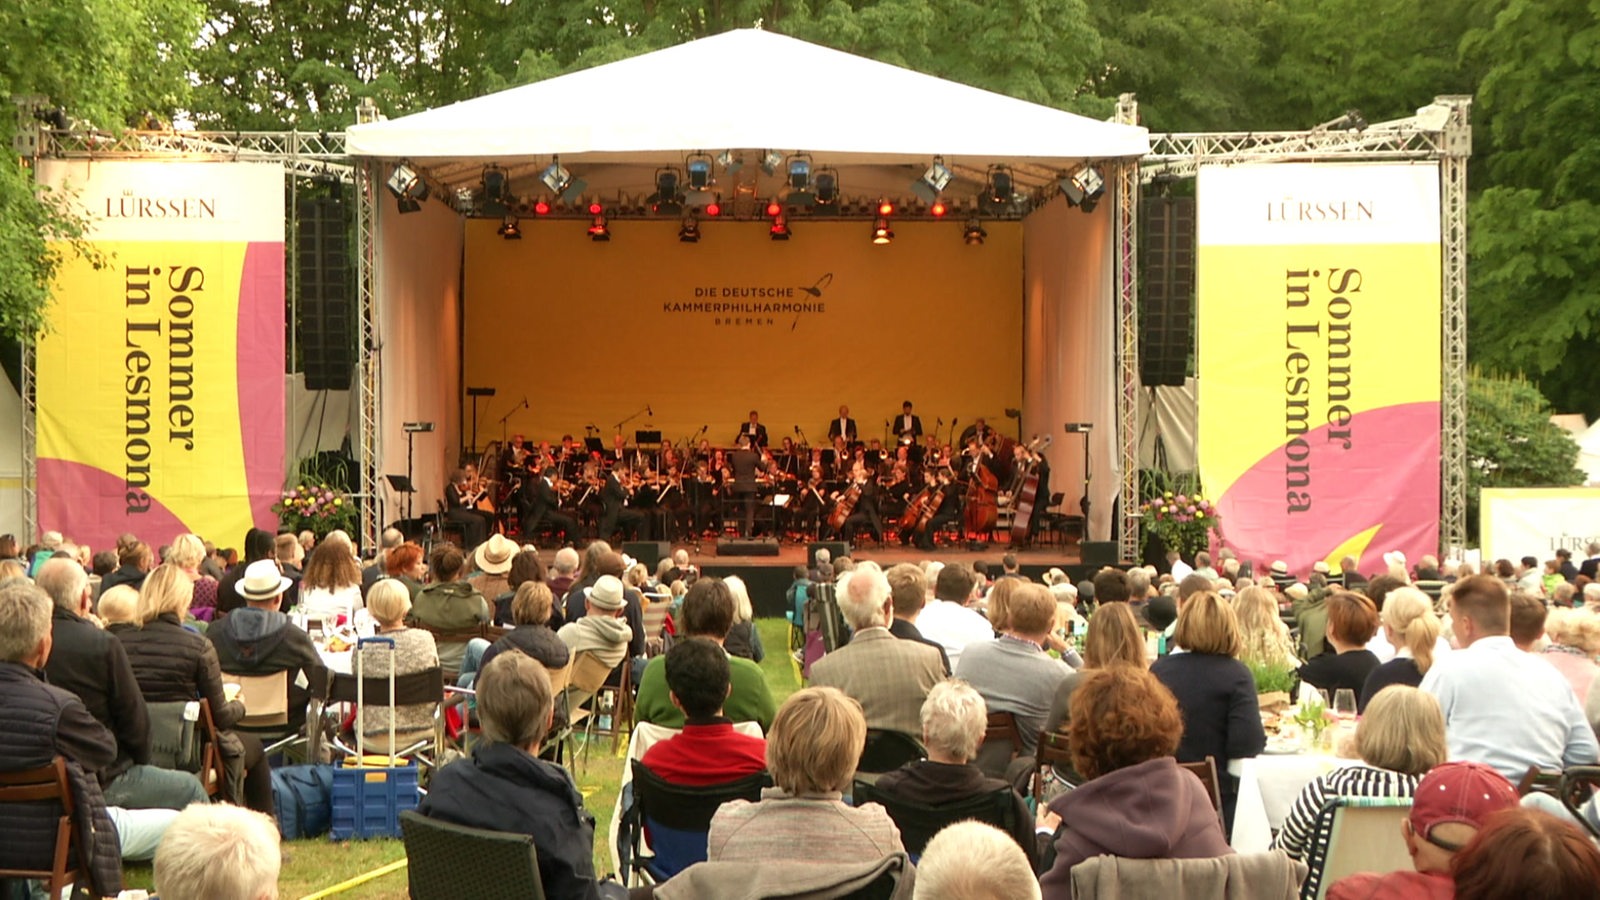 Die Zuschauer der Veranstaltung"Sommer in Lesmona" schauen sich eine Aufführung der deutschen Kammerphilarharmonie an.